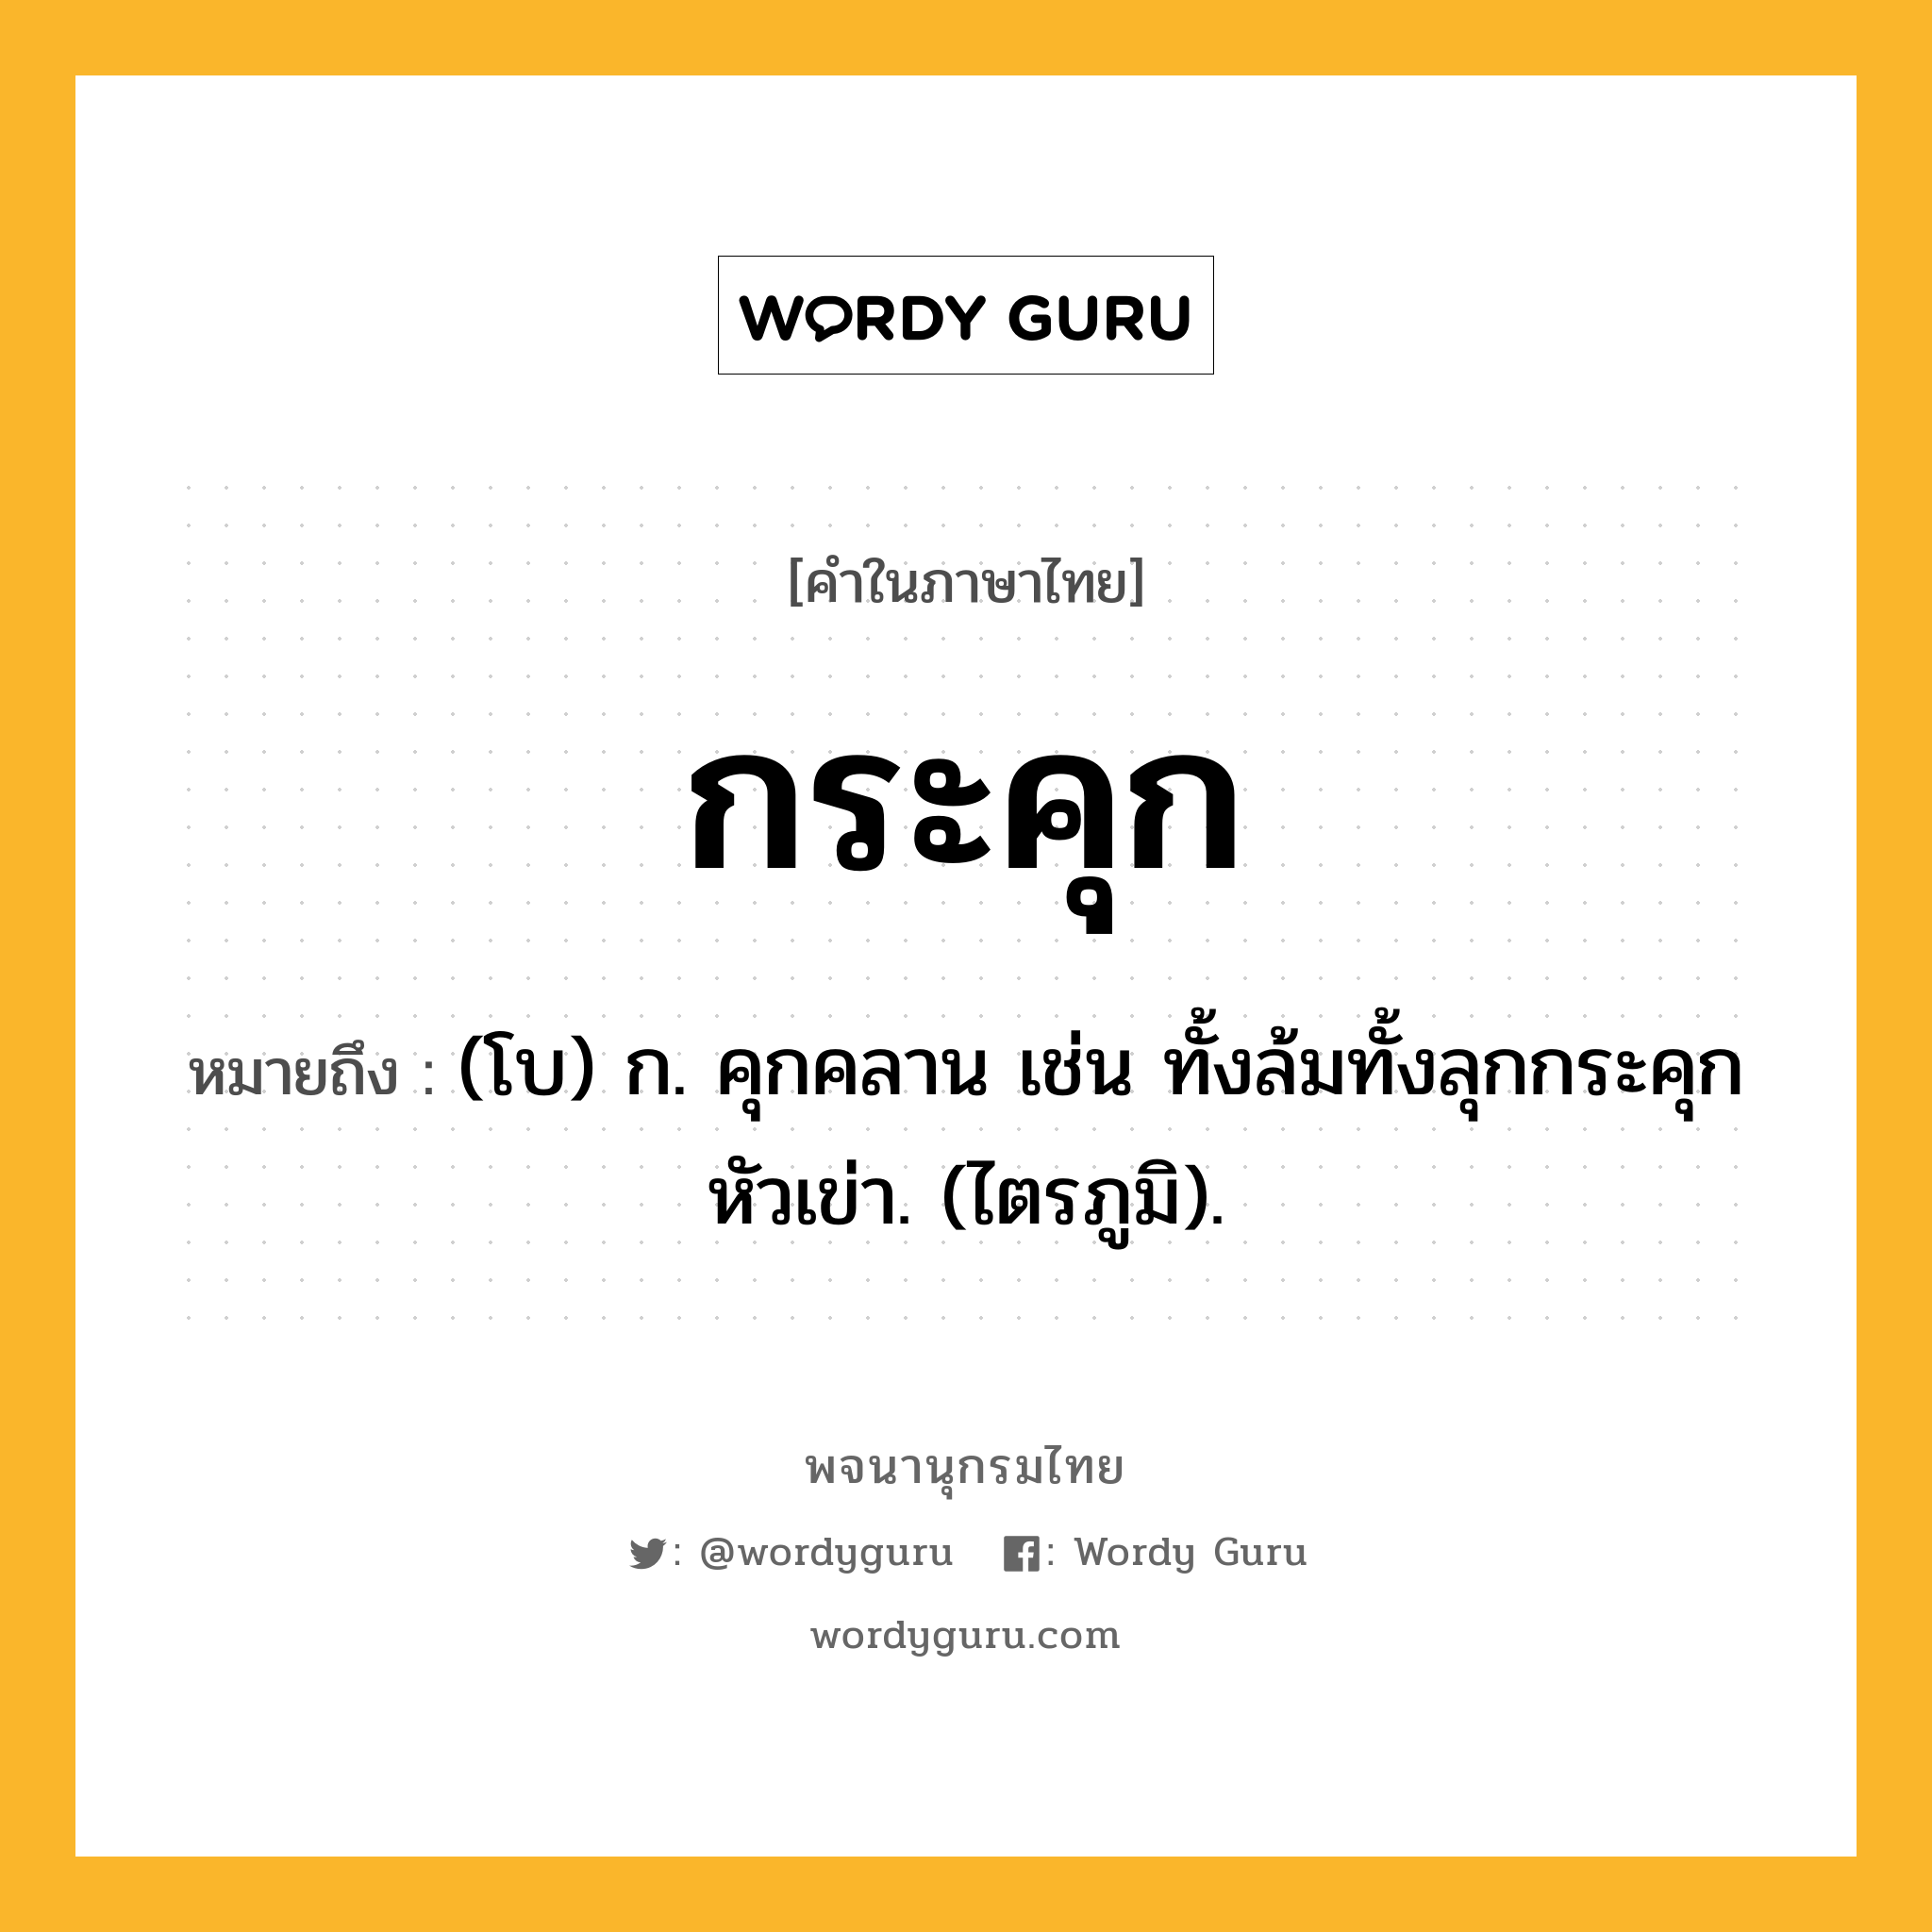 กระคุก ความหมาย หมายถึงอะไร?, คำในภาษาไทย กระคุก หมายถึง (โบ) ก. คุกคลาน เช่น ทั้งล้มทั้งลุกกระคุกหัวเข่า. (ไตรภูมิ).